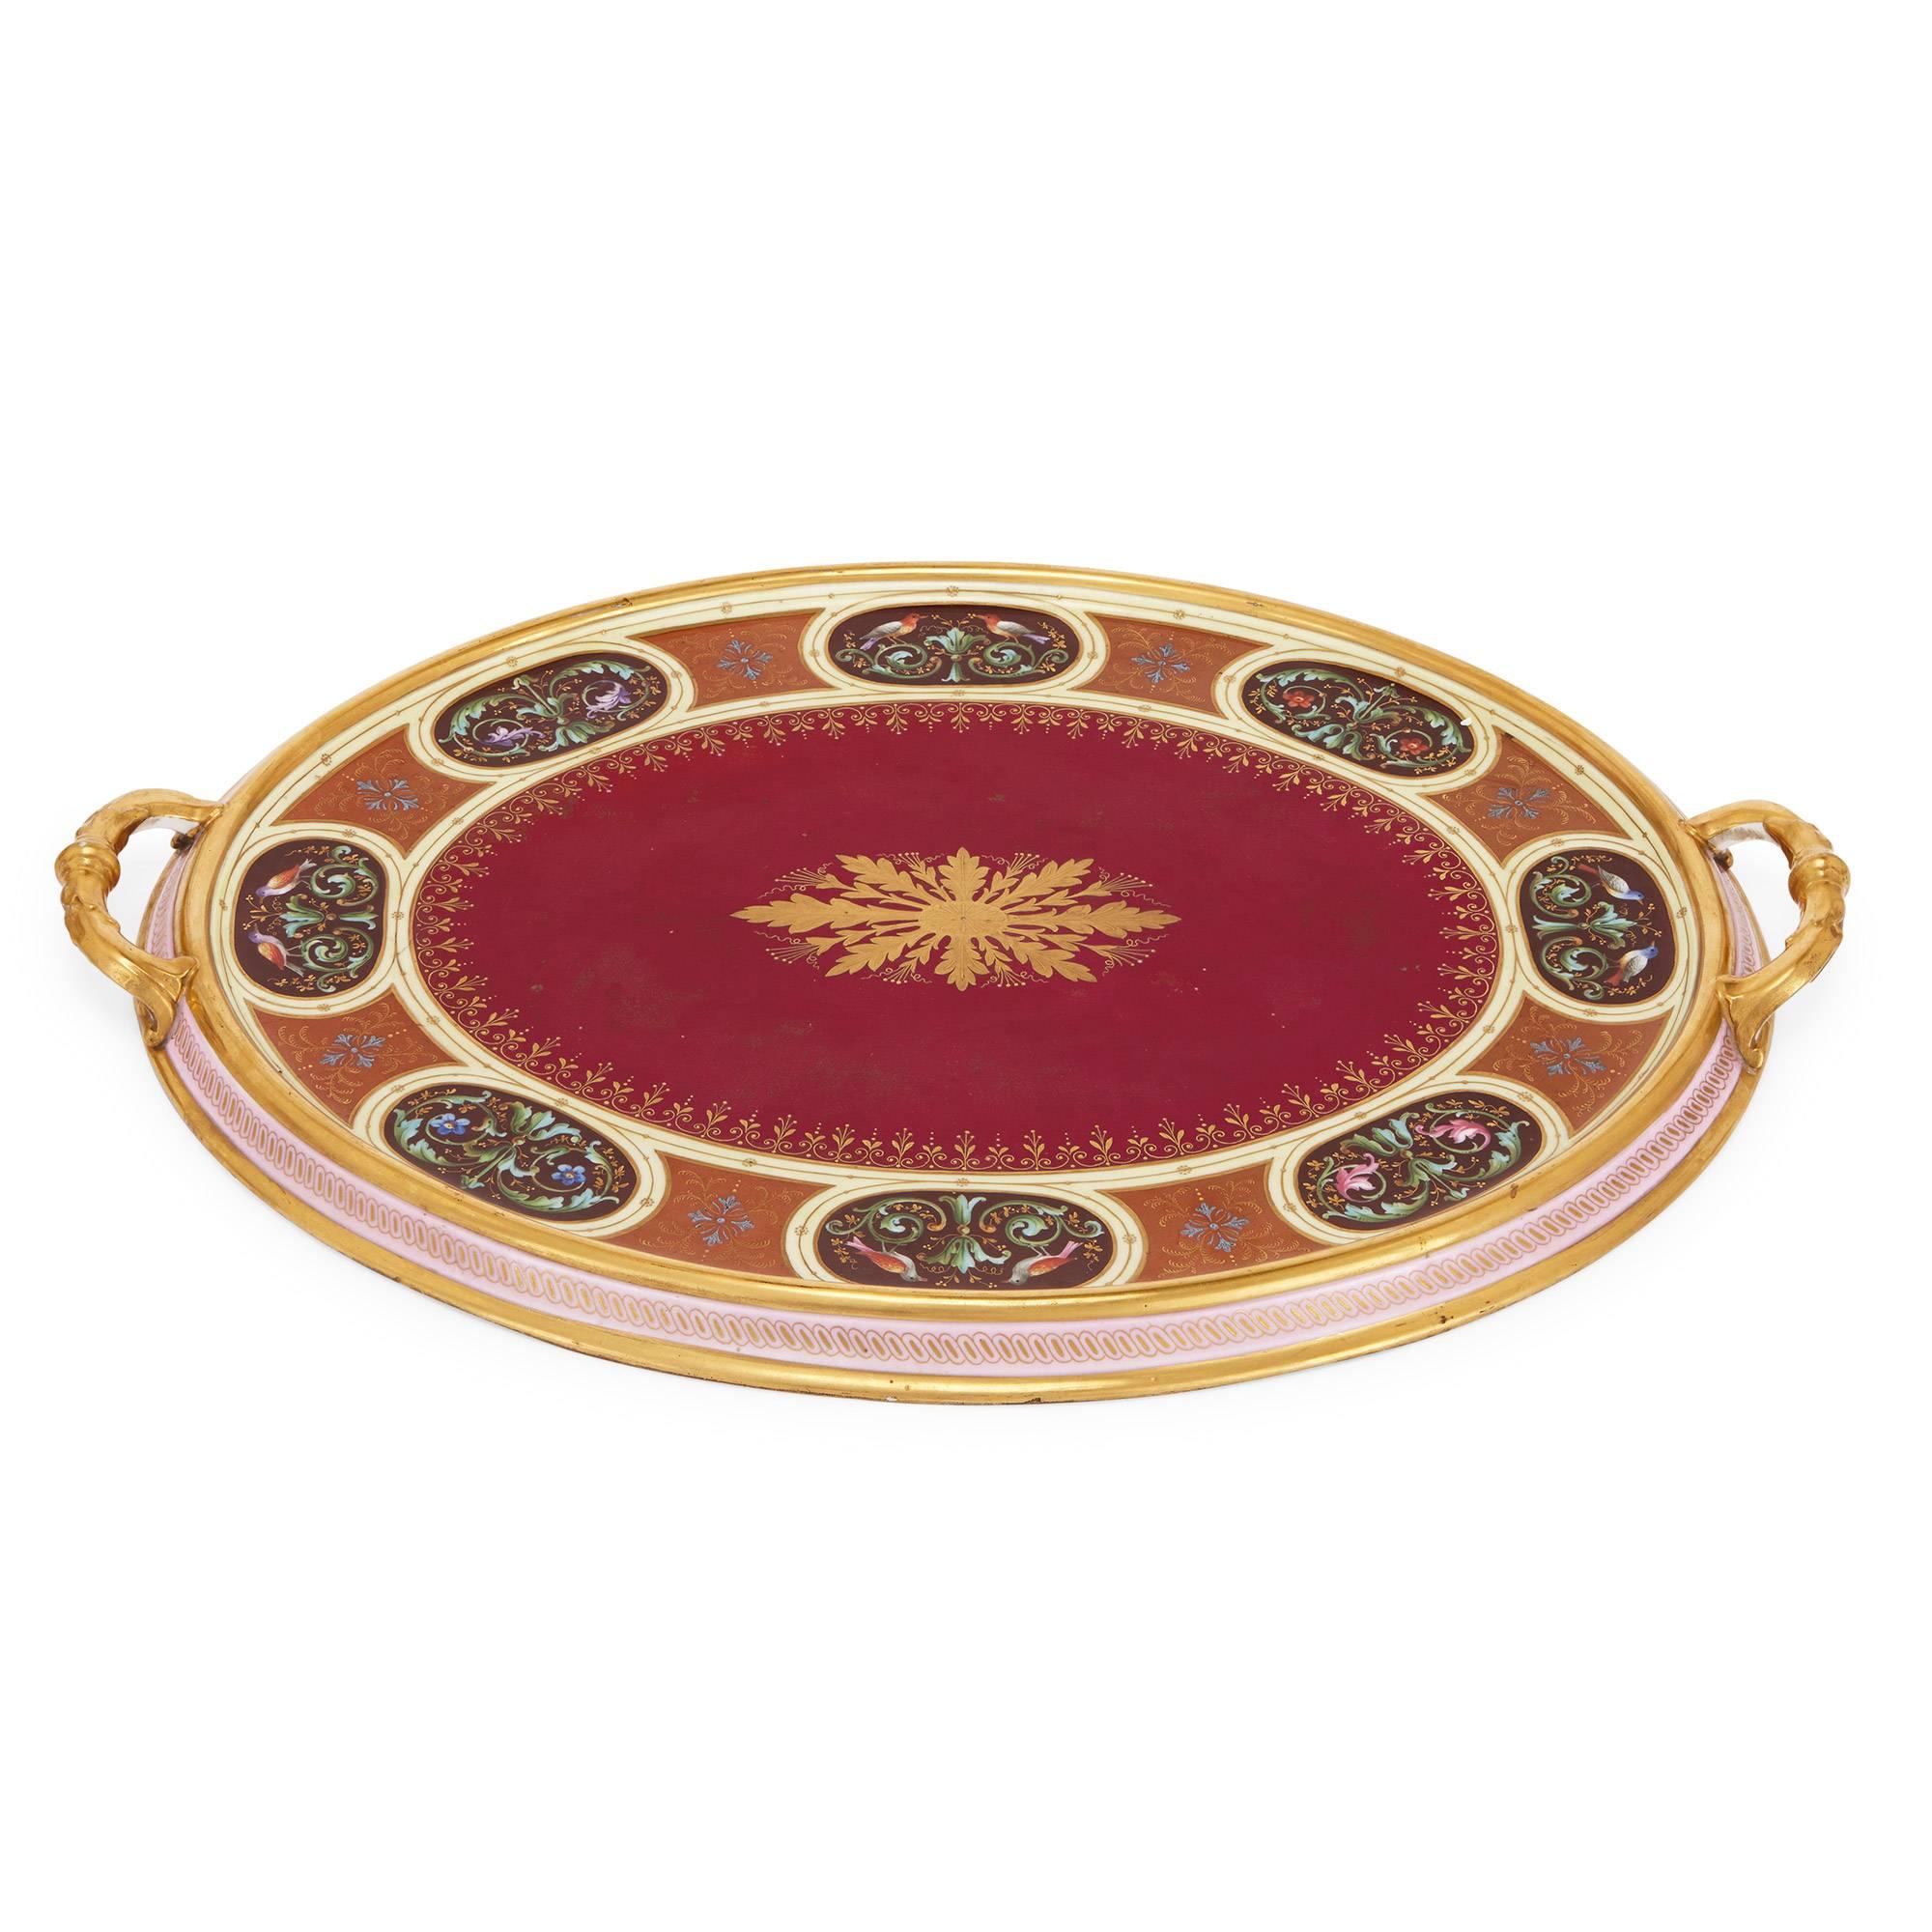 19th Century Antique 25-Piece Royal Vienna Porcelain Service